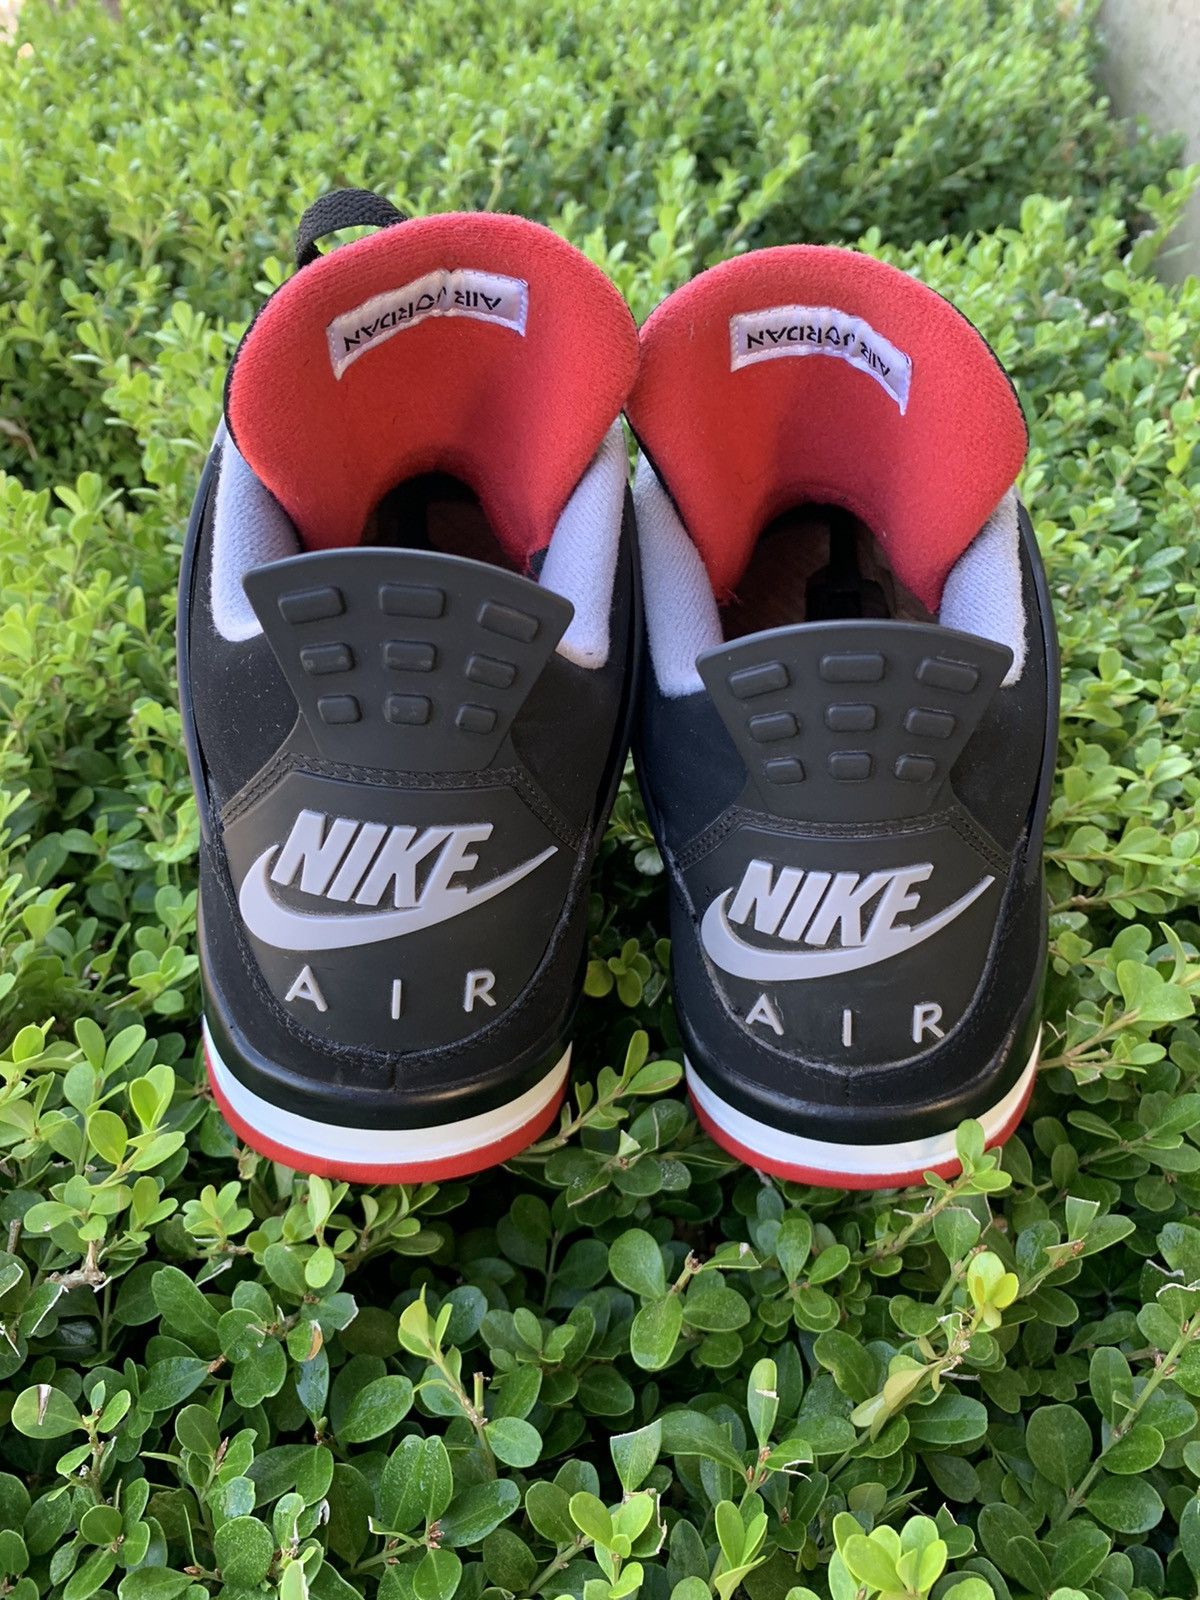 Nike Air Jordan 4 Retro OG 2019 Bred 2019 Size US 13 / EU 46 - 5 Thumbnail